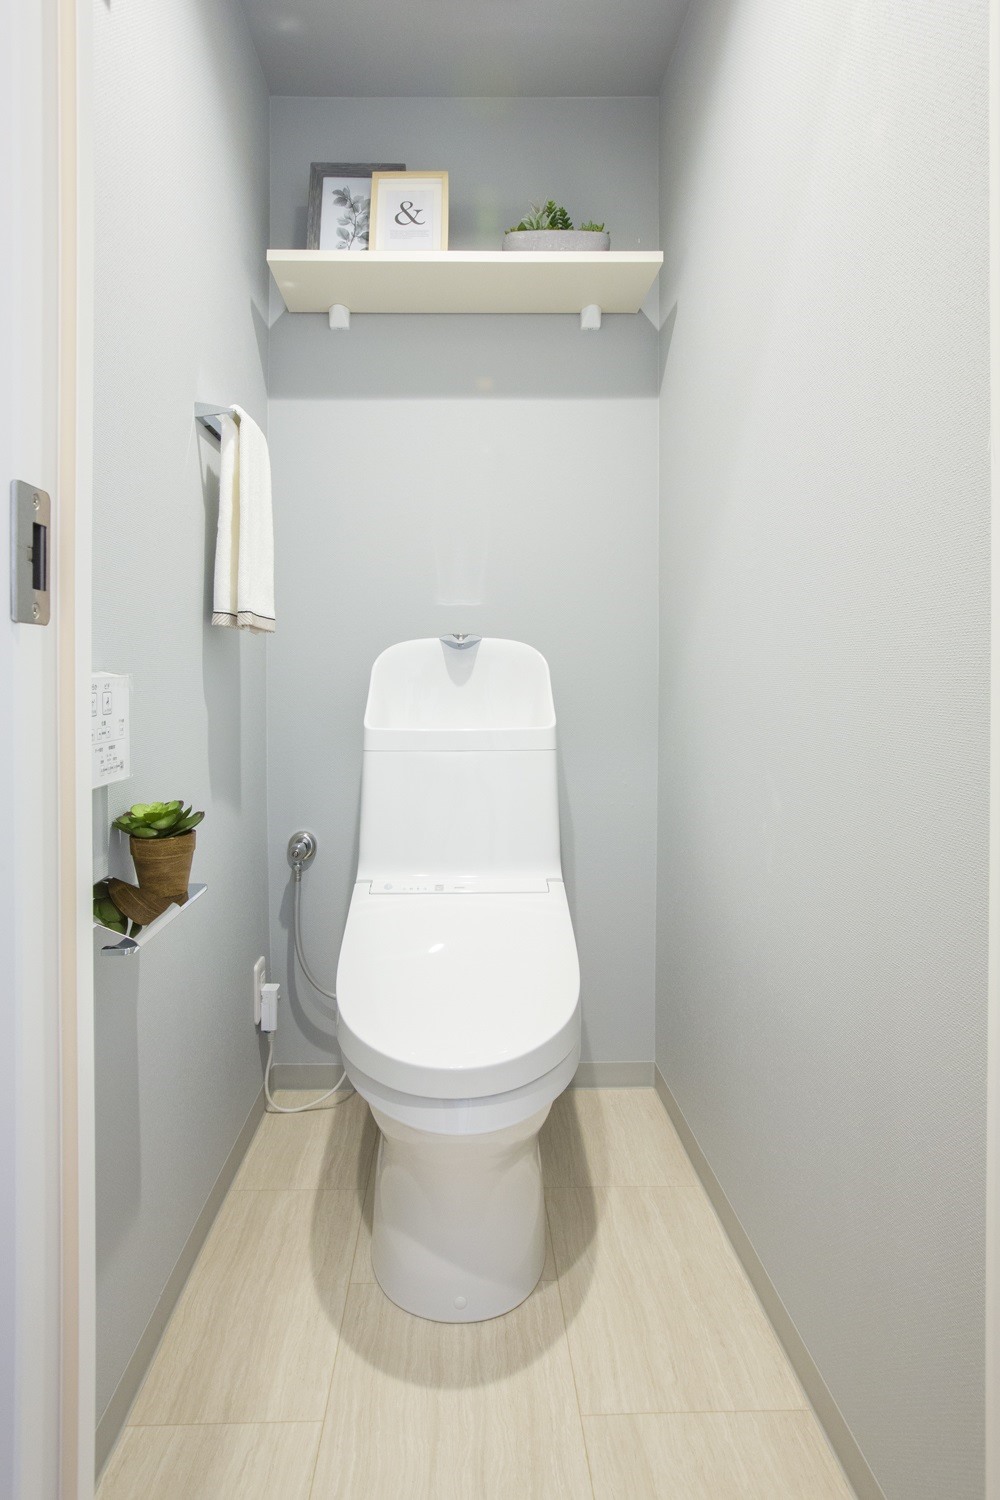 温水洗浄便座付トイレ。上部には収納スペースを設置しており、トイレットペーパーや掃除用品をしまえます。(2021年10月)